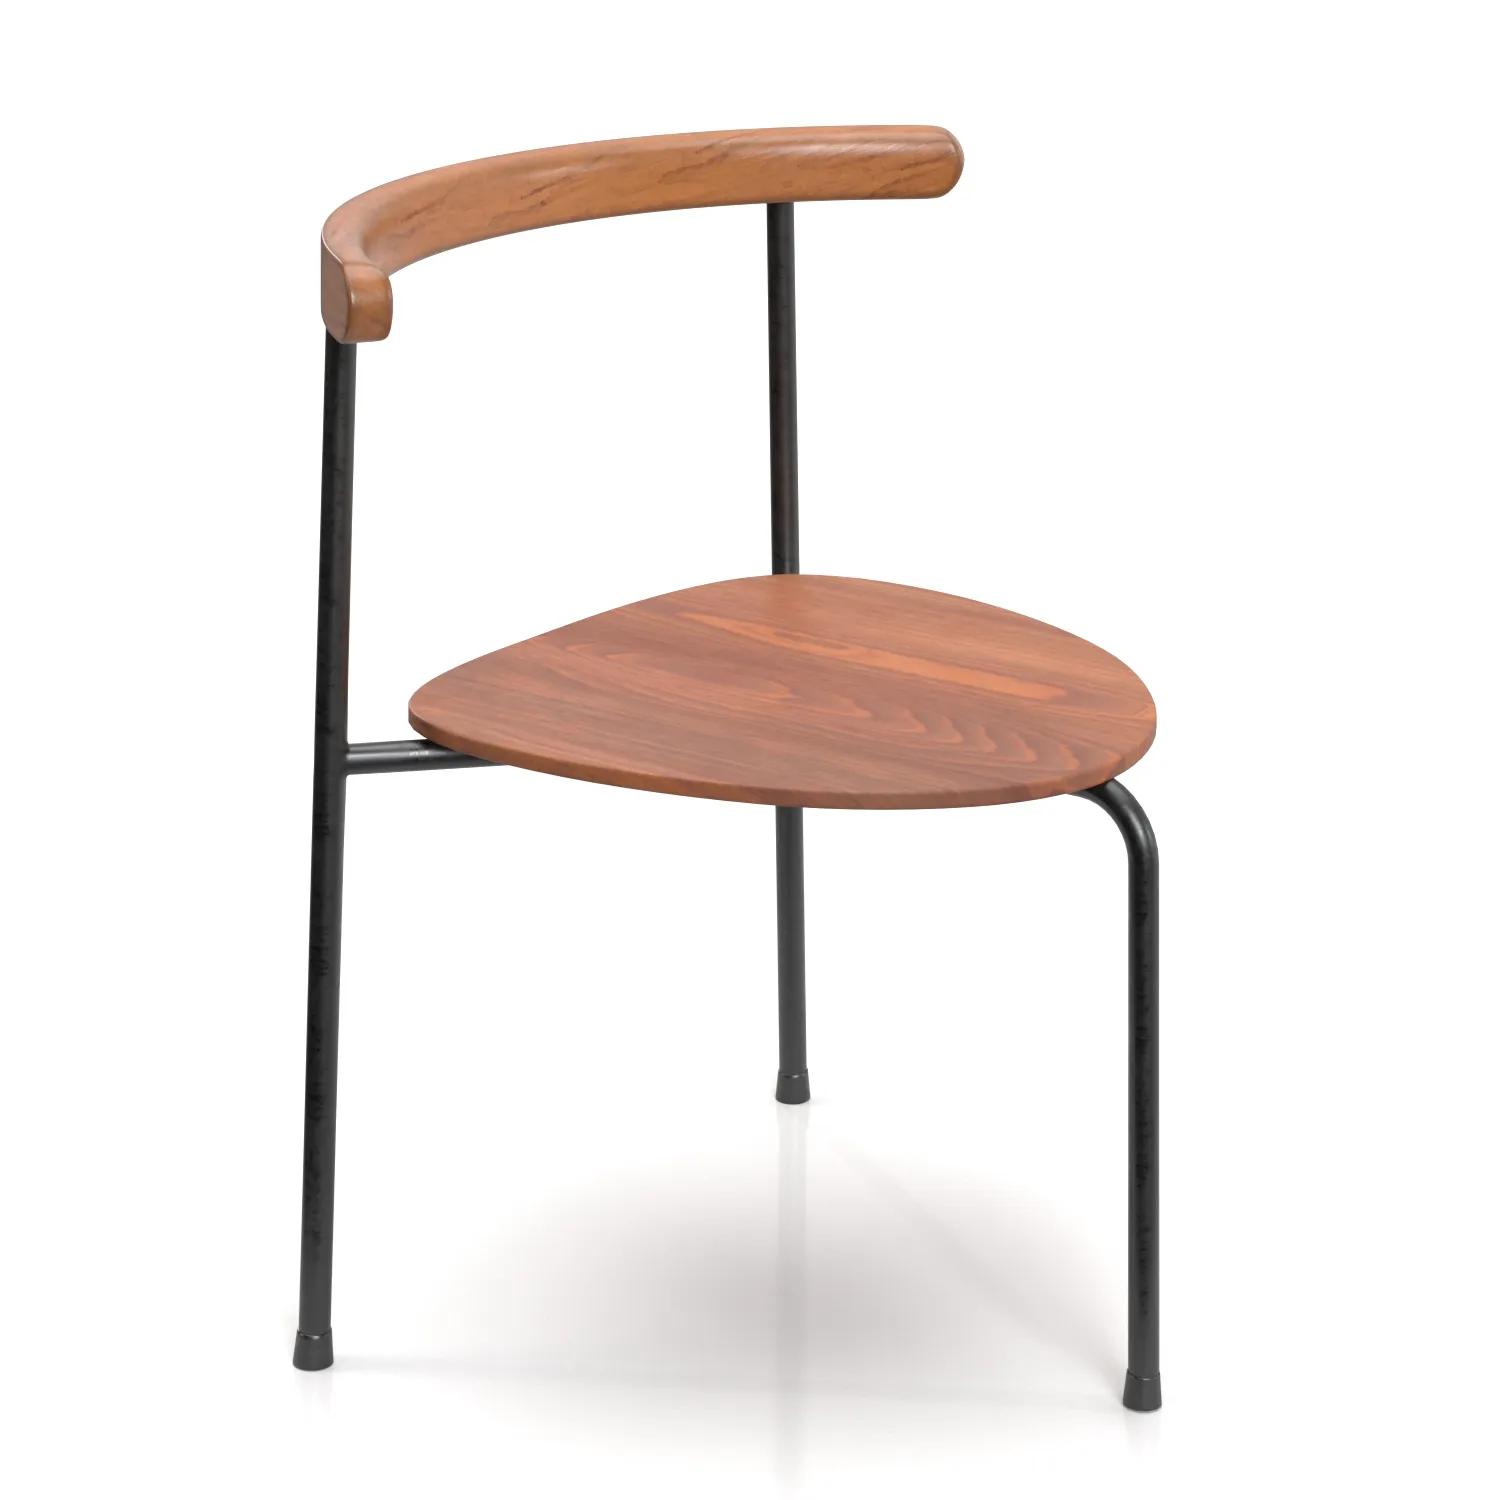 3 Legged Teak Beech and Metal Dining Chair PBR 3D Model_01